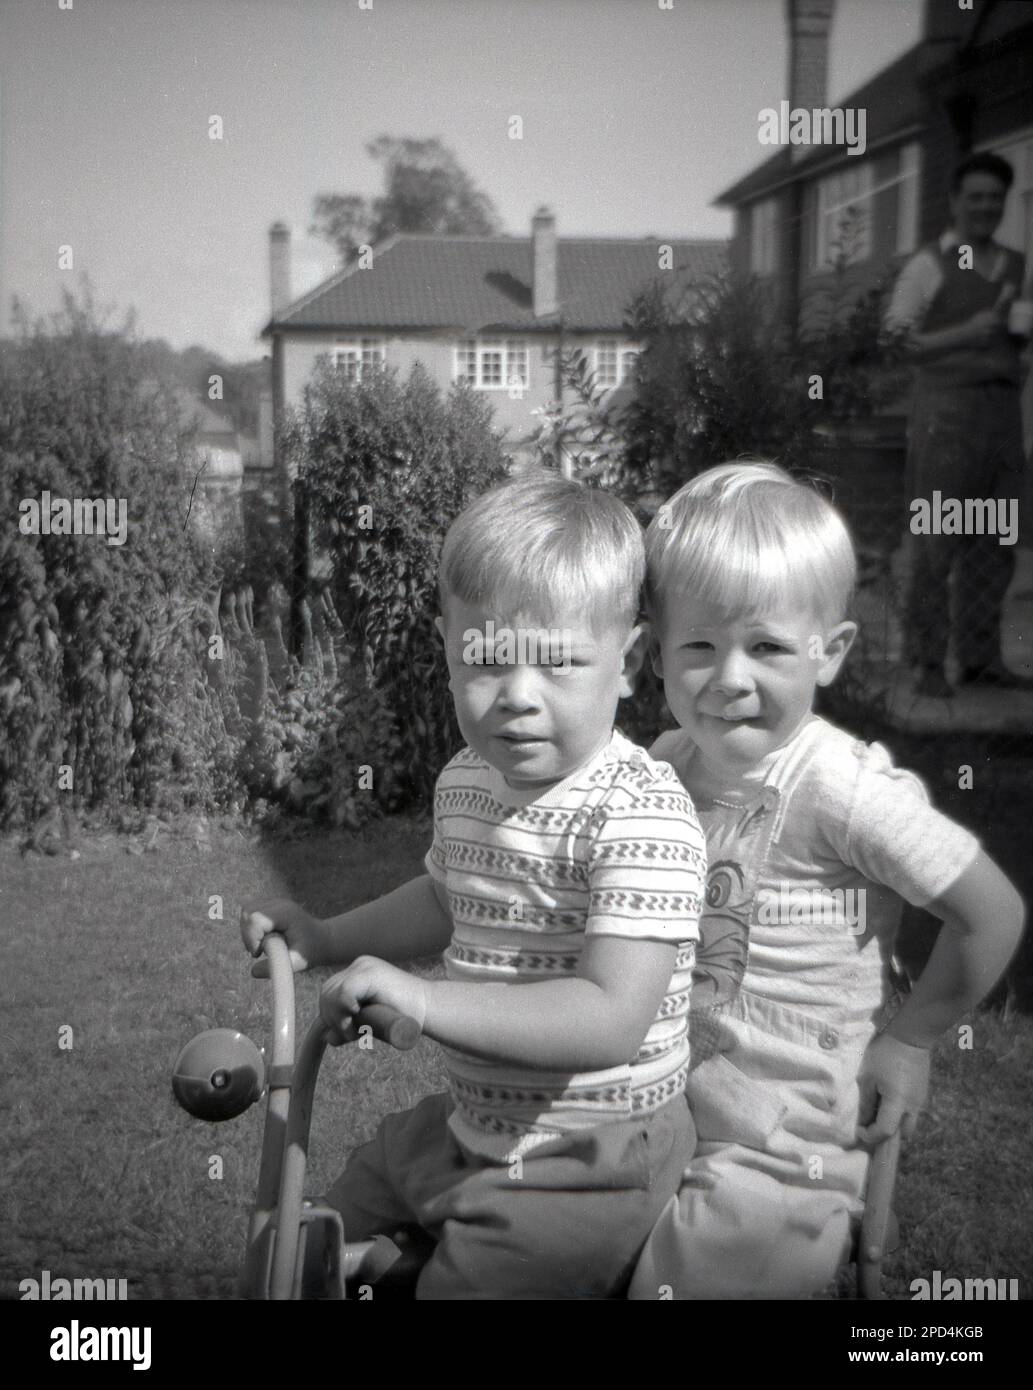 1964, historique, l'été, à l'extérieur dans un jardin, deux petits garçons blonds aux cheveux assis ensemble sur un tricycle d'enfant, Angleterre, Royaume-Uni. Banque D'Images